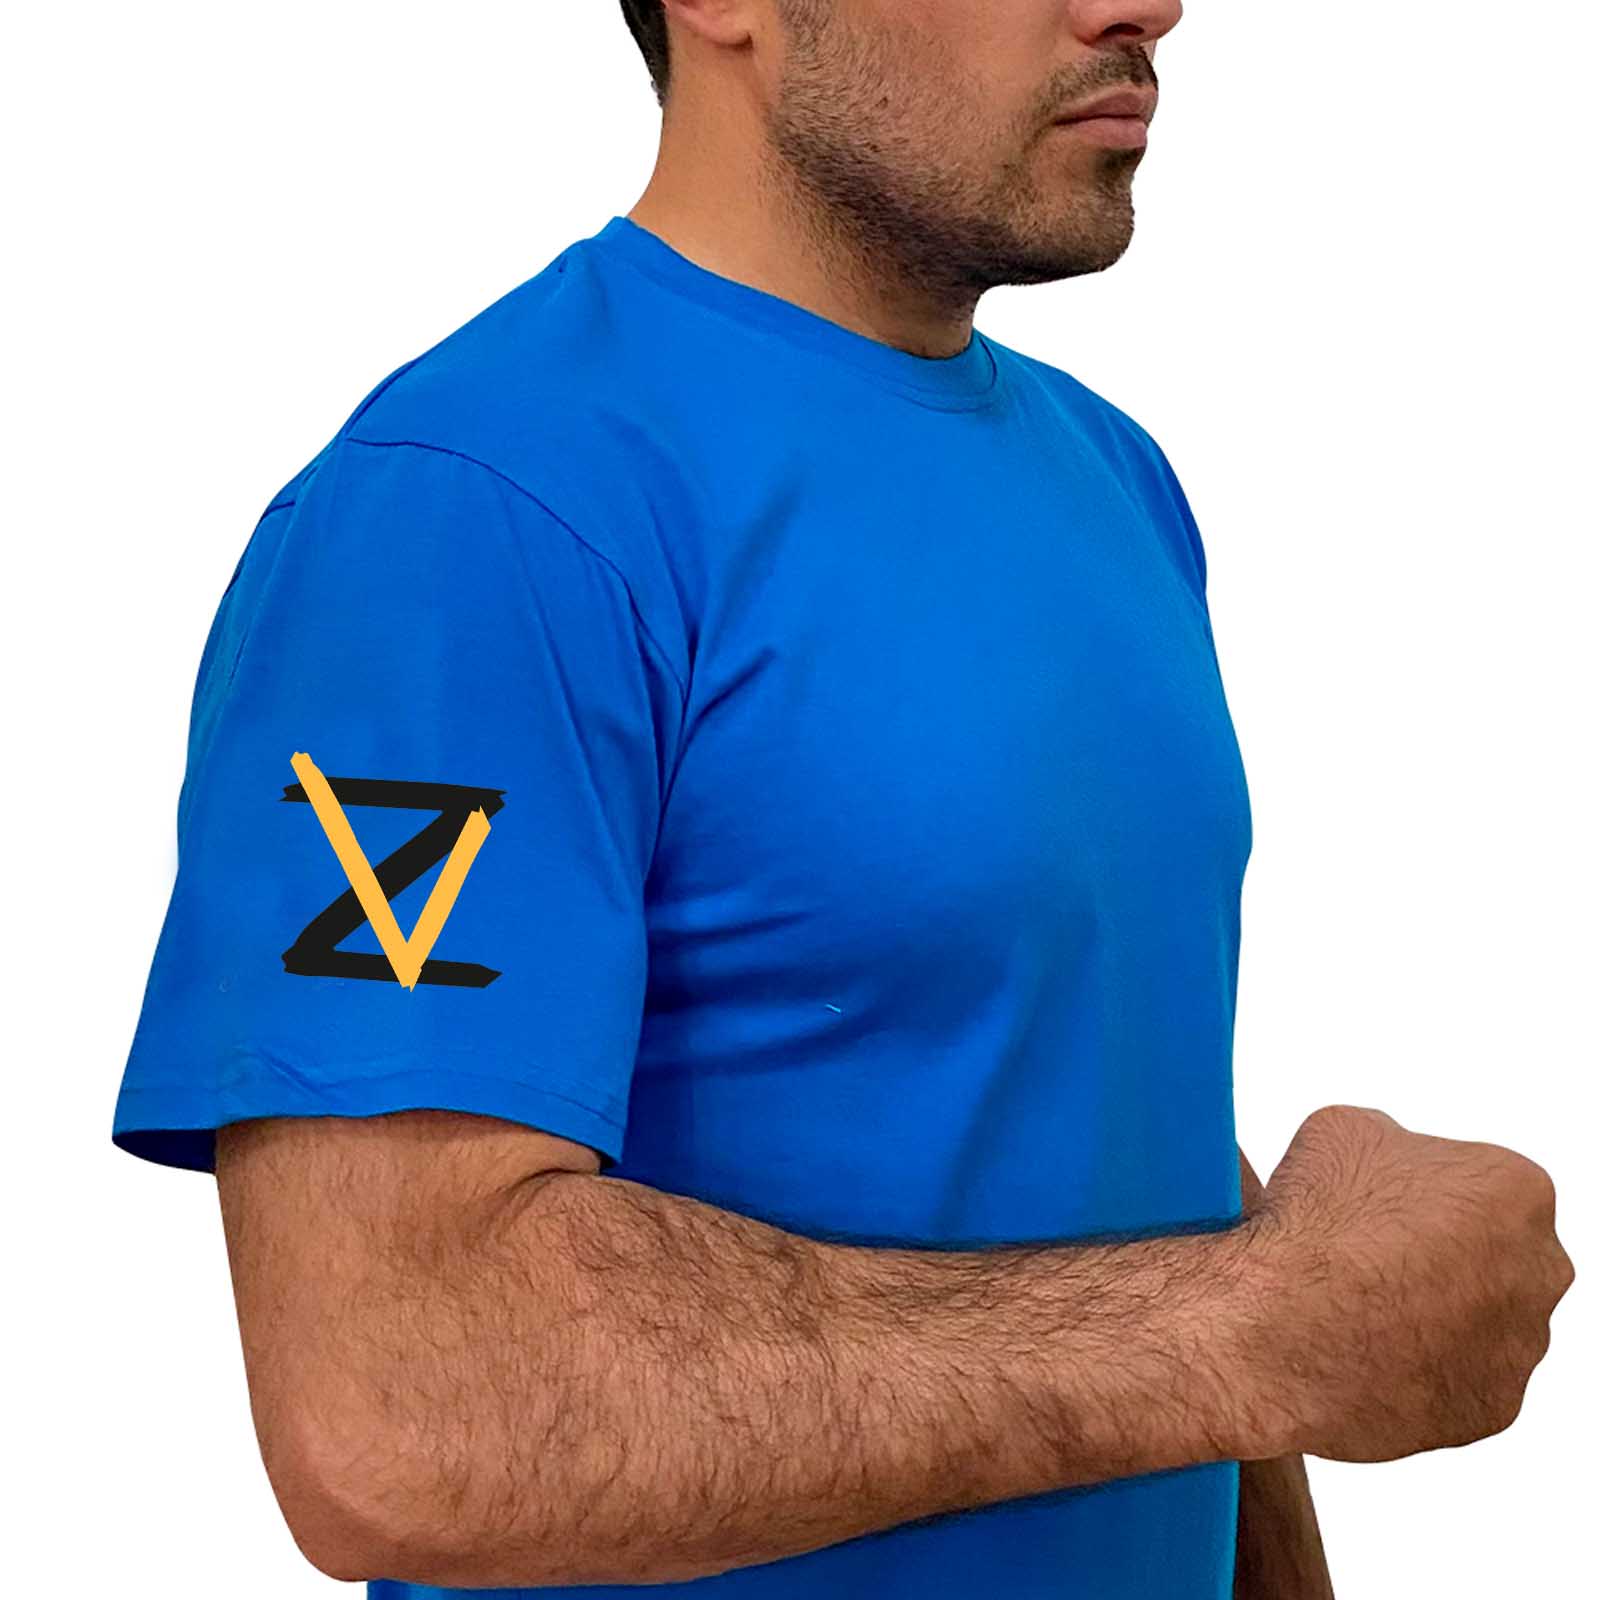 Купить стильную хлопковую футболку Z V онлайн выгодно